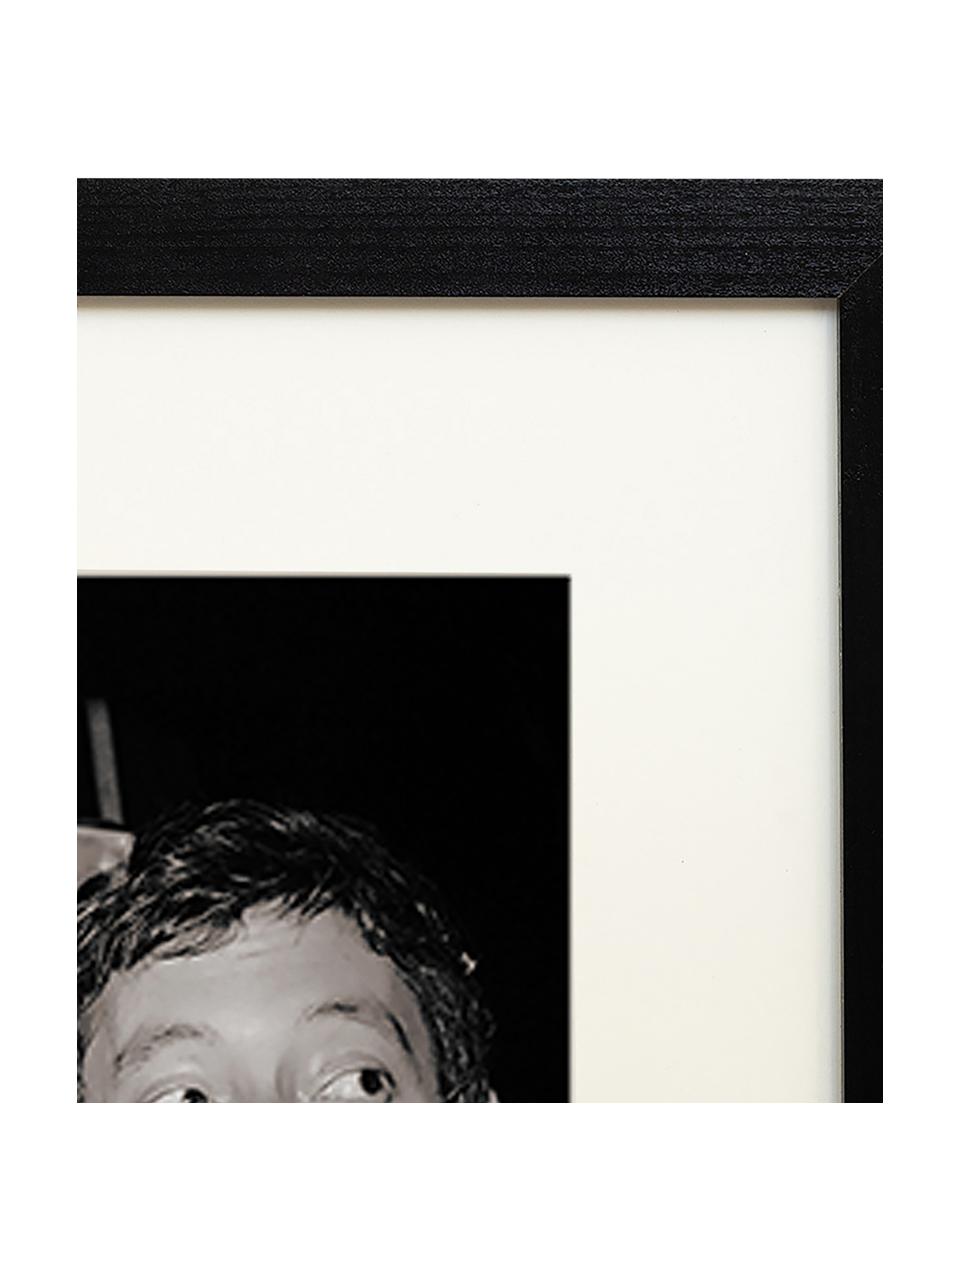 Zarámovaná fotografie Serge Gainsbourg & Jane Birkin, Černá, tlumeně bílá, Š 33 cm, V 43 cm